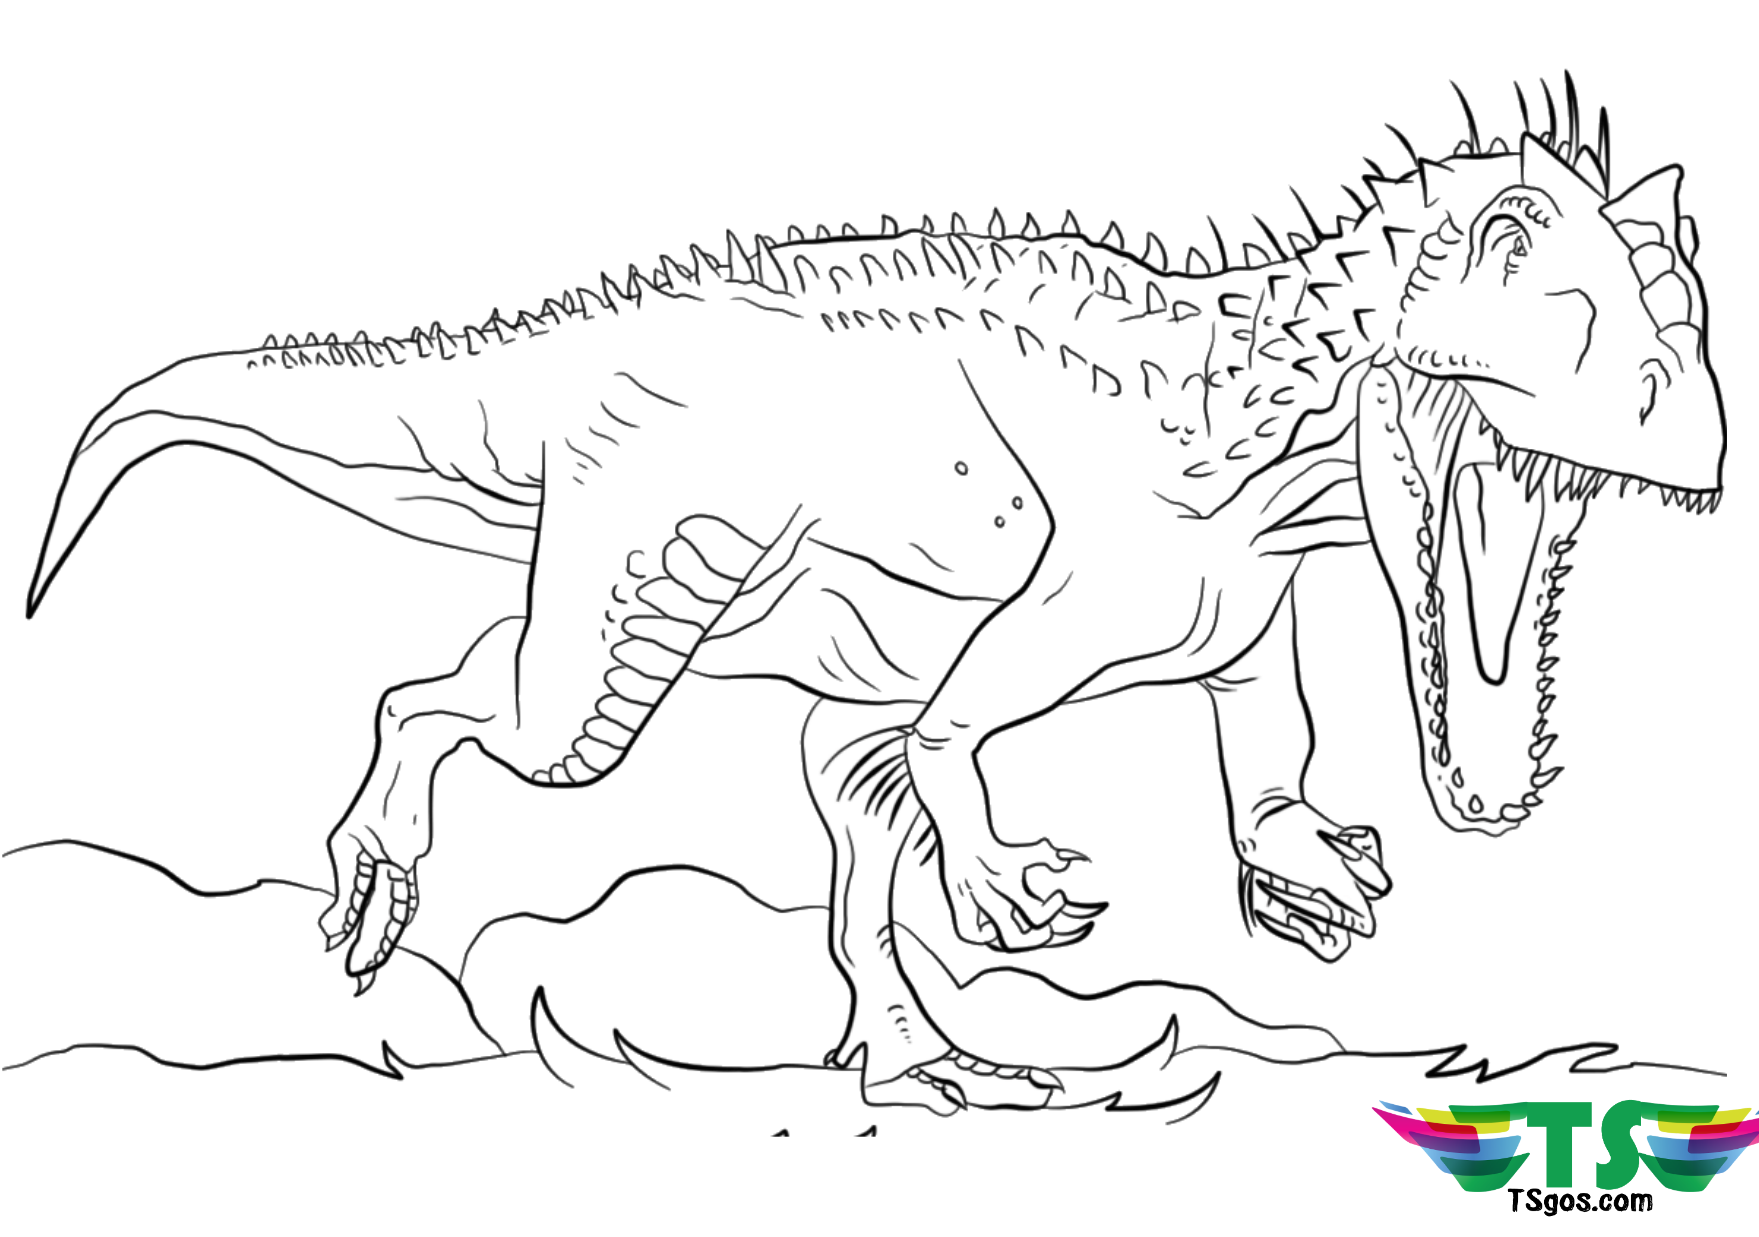 Раскраски Аллозавр